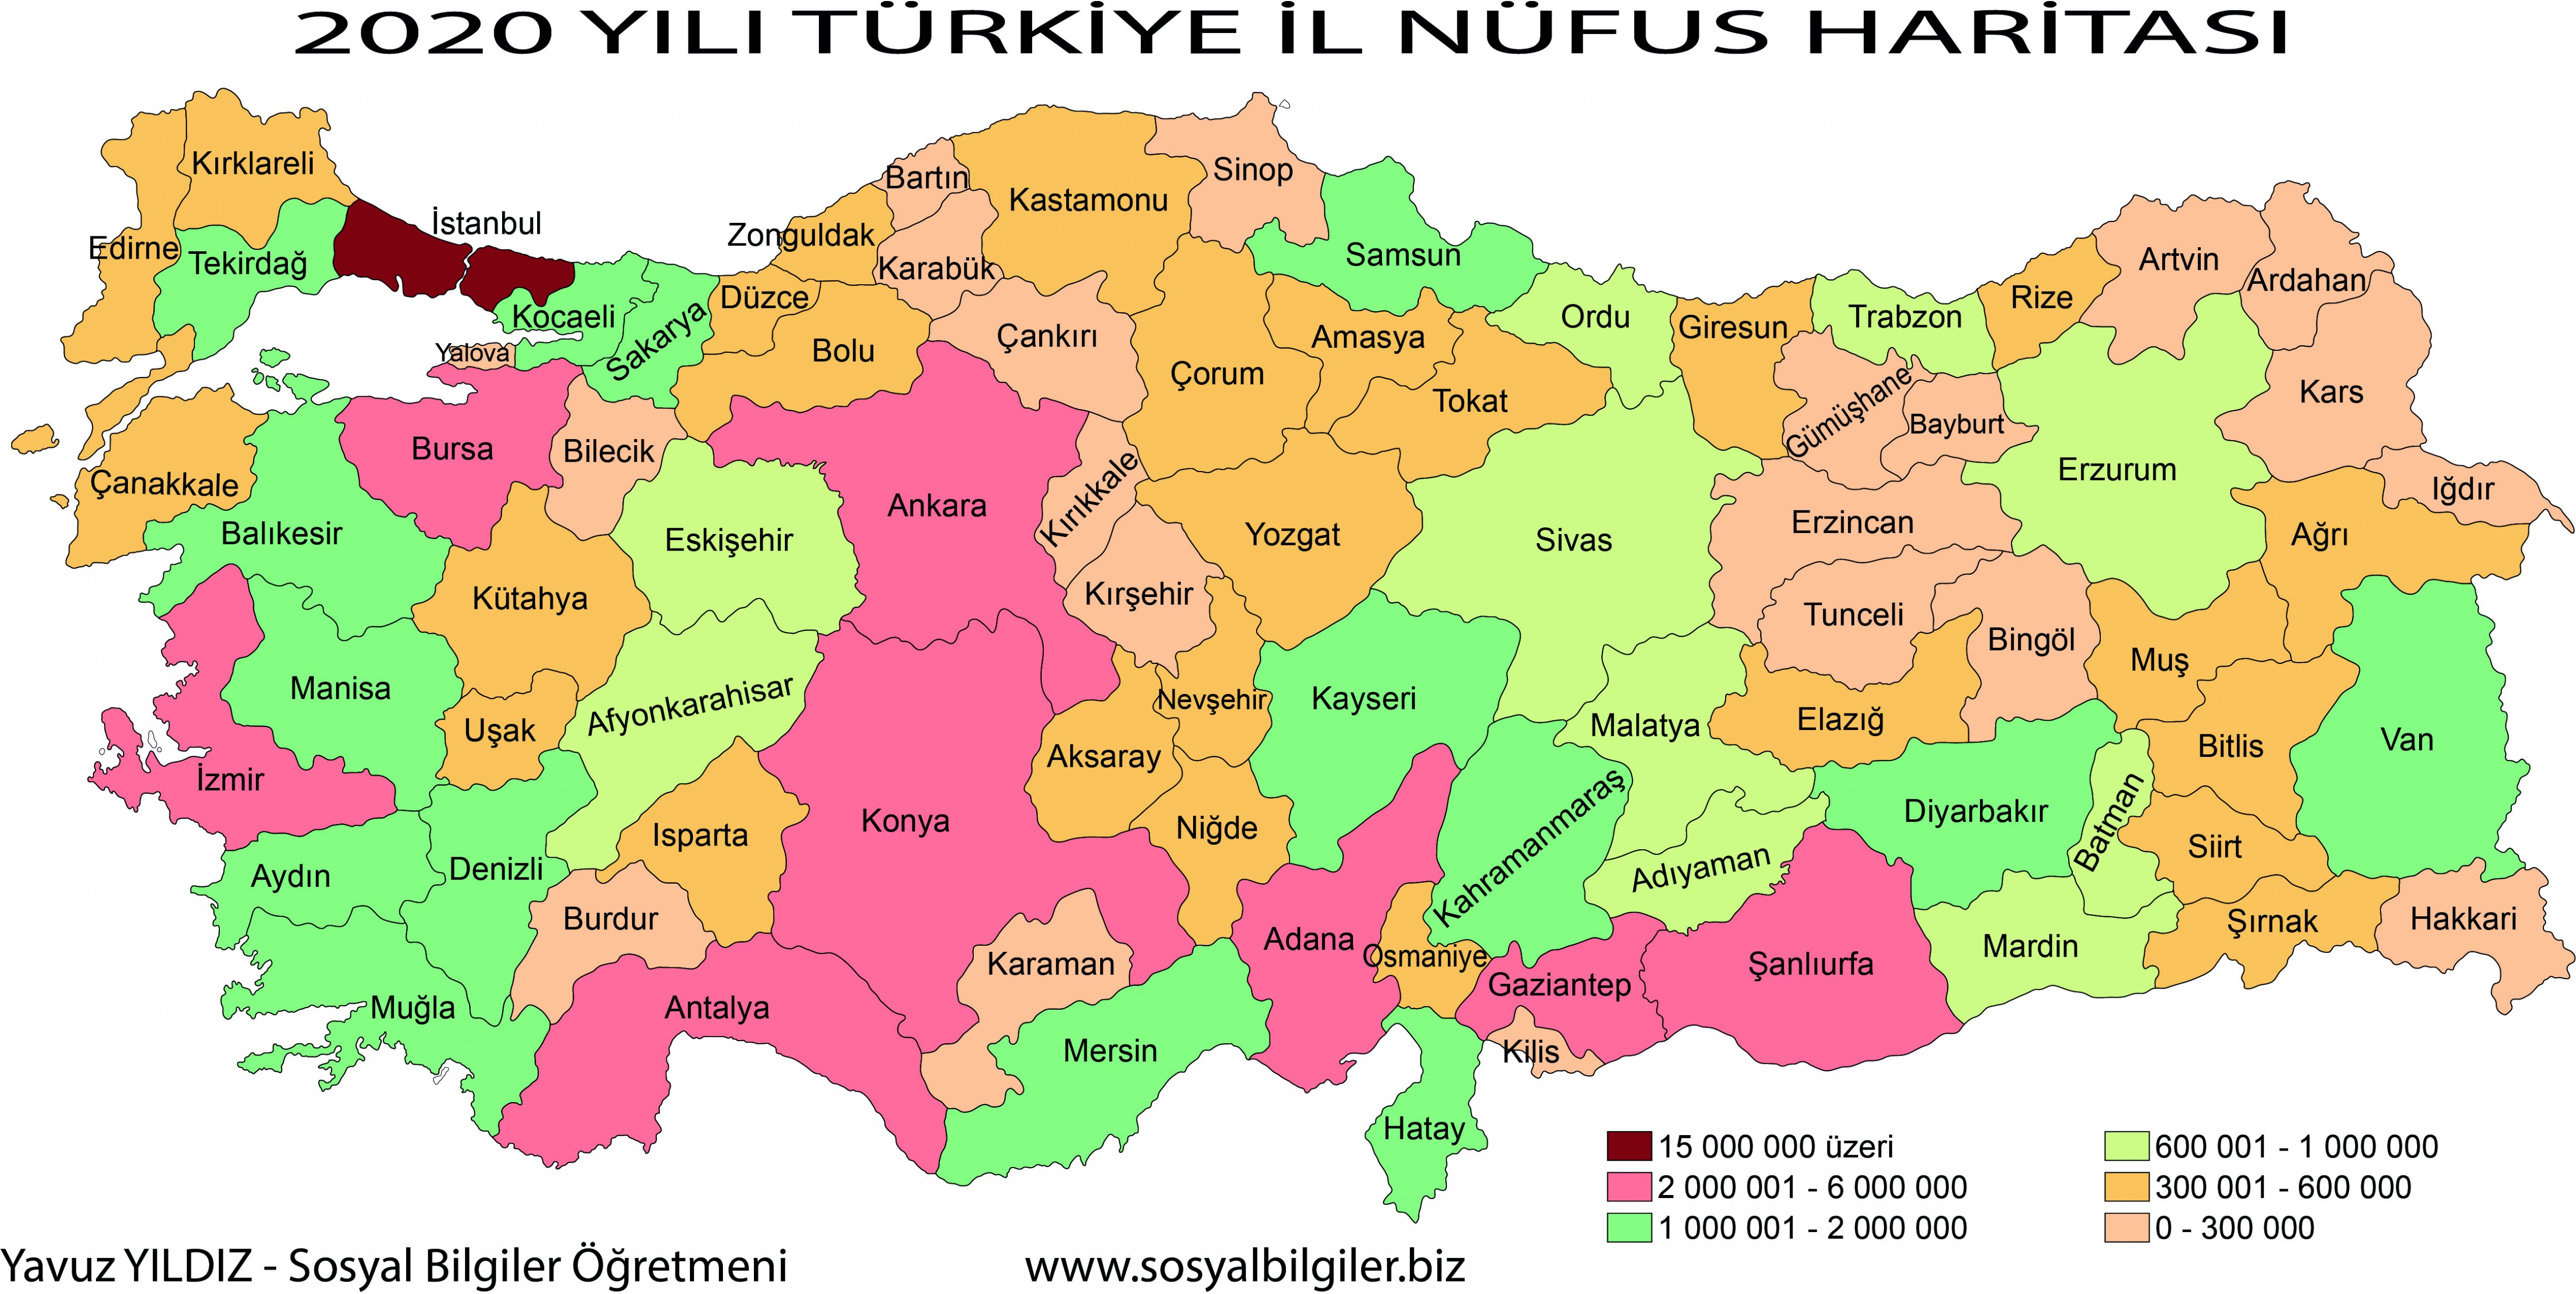 türkiye il nüfus haritası 2020.jpg